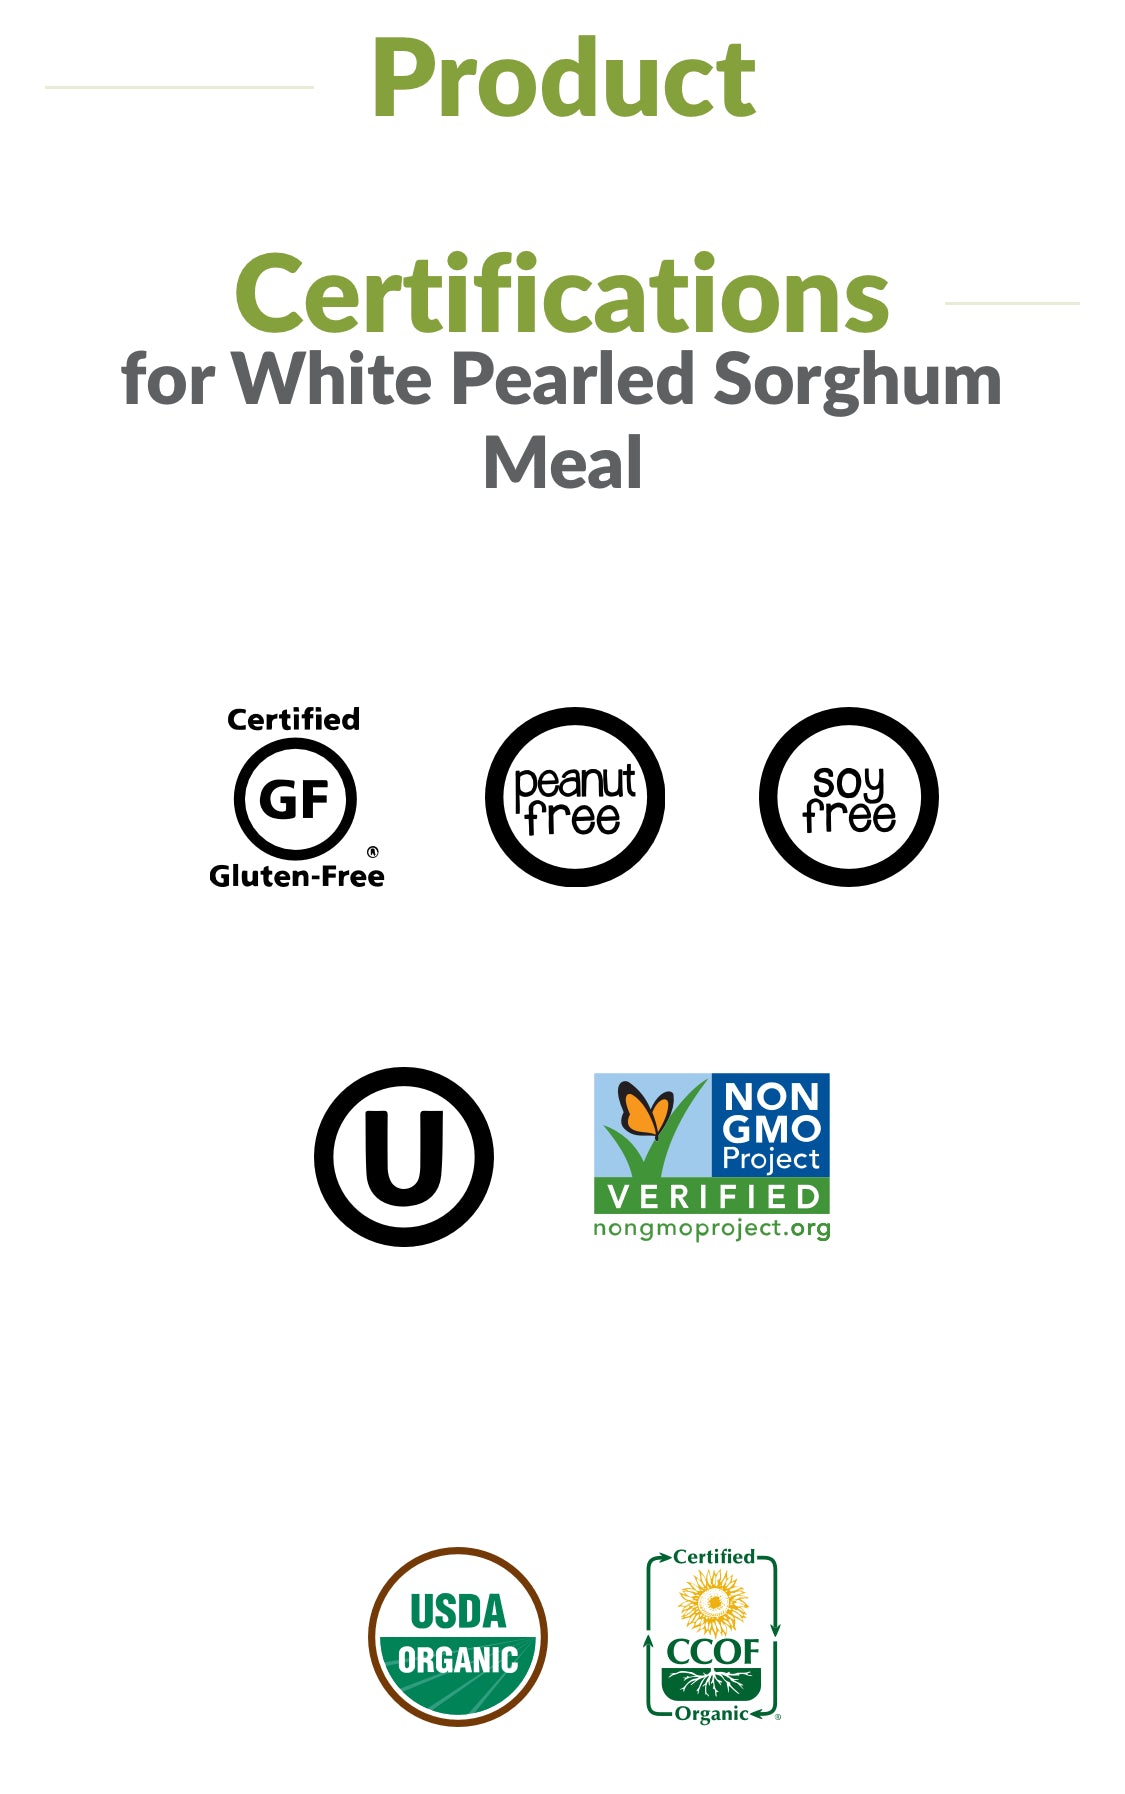 Organic Sorghum (Jowar) meal